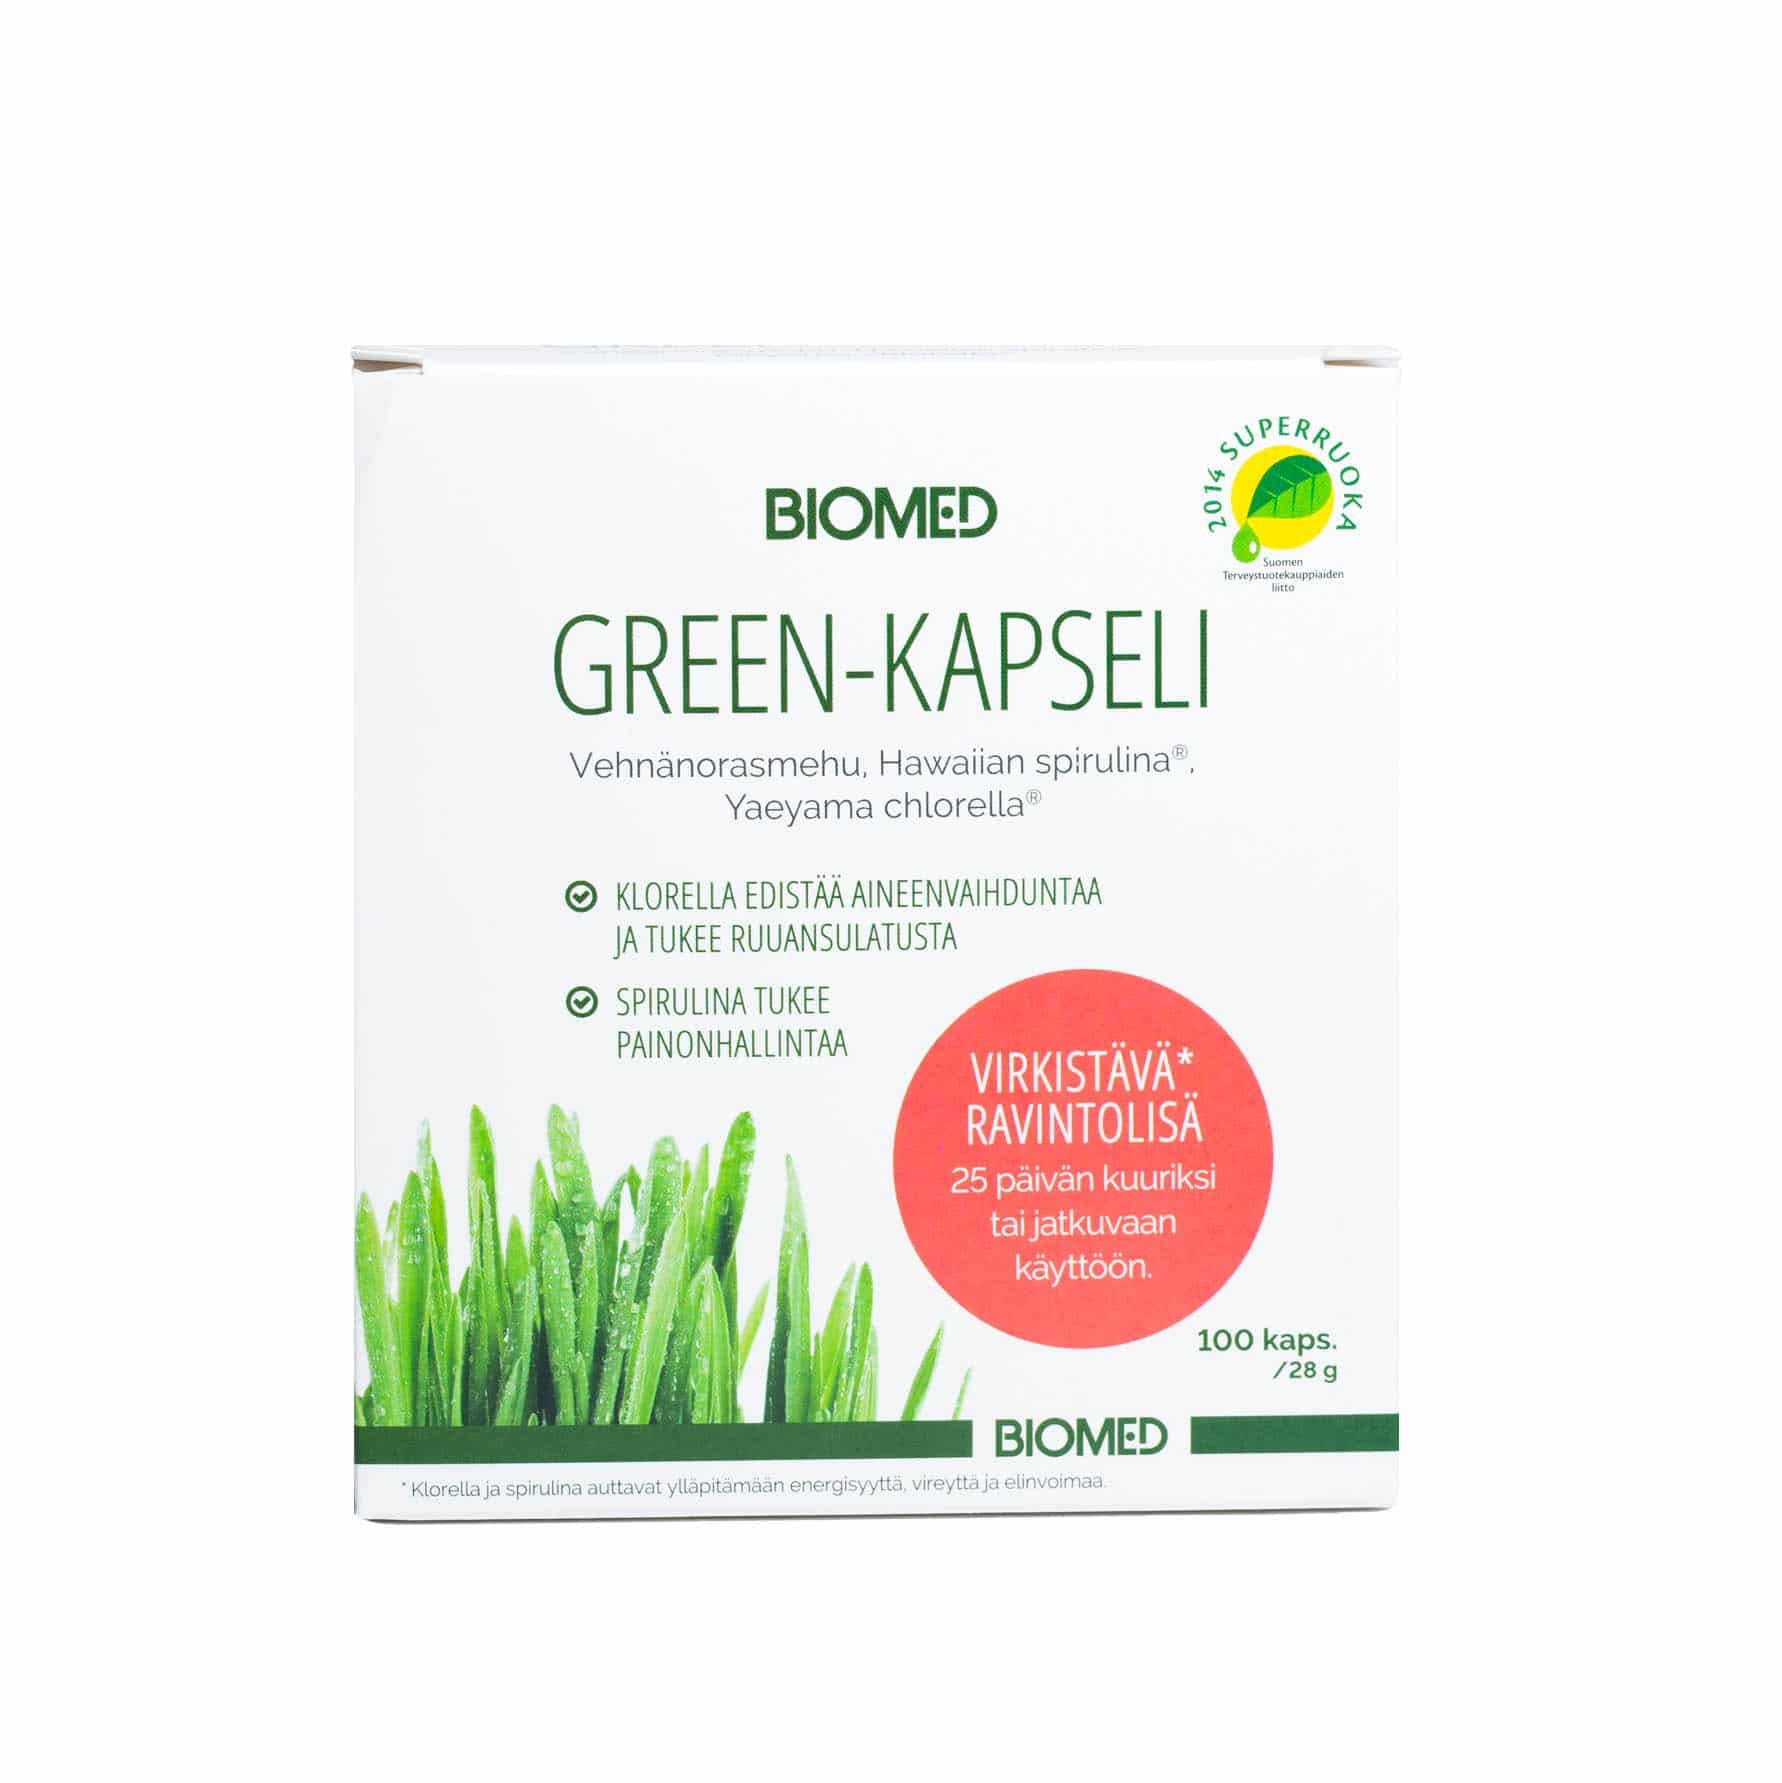 Biomed Green-kapseli